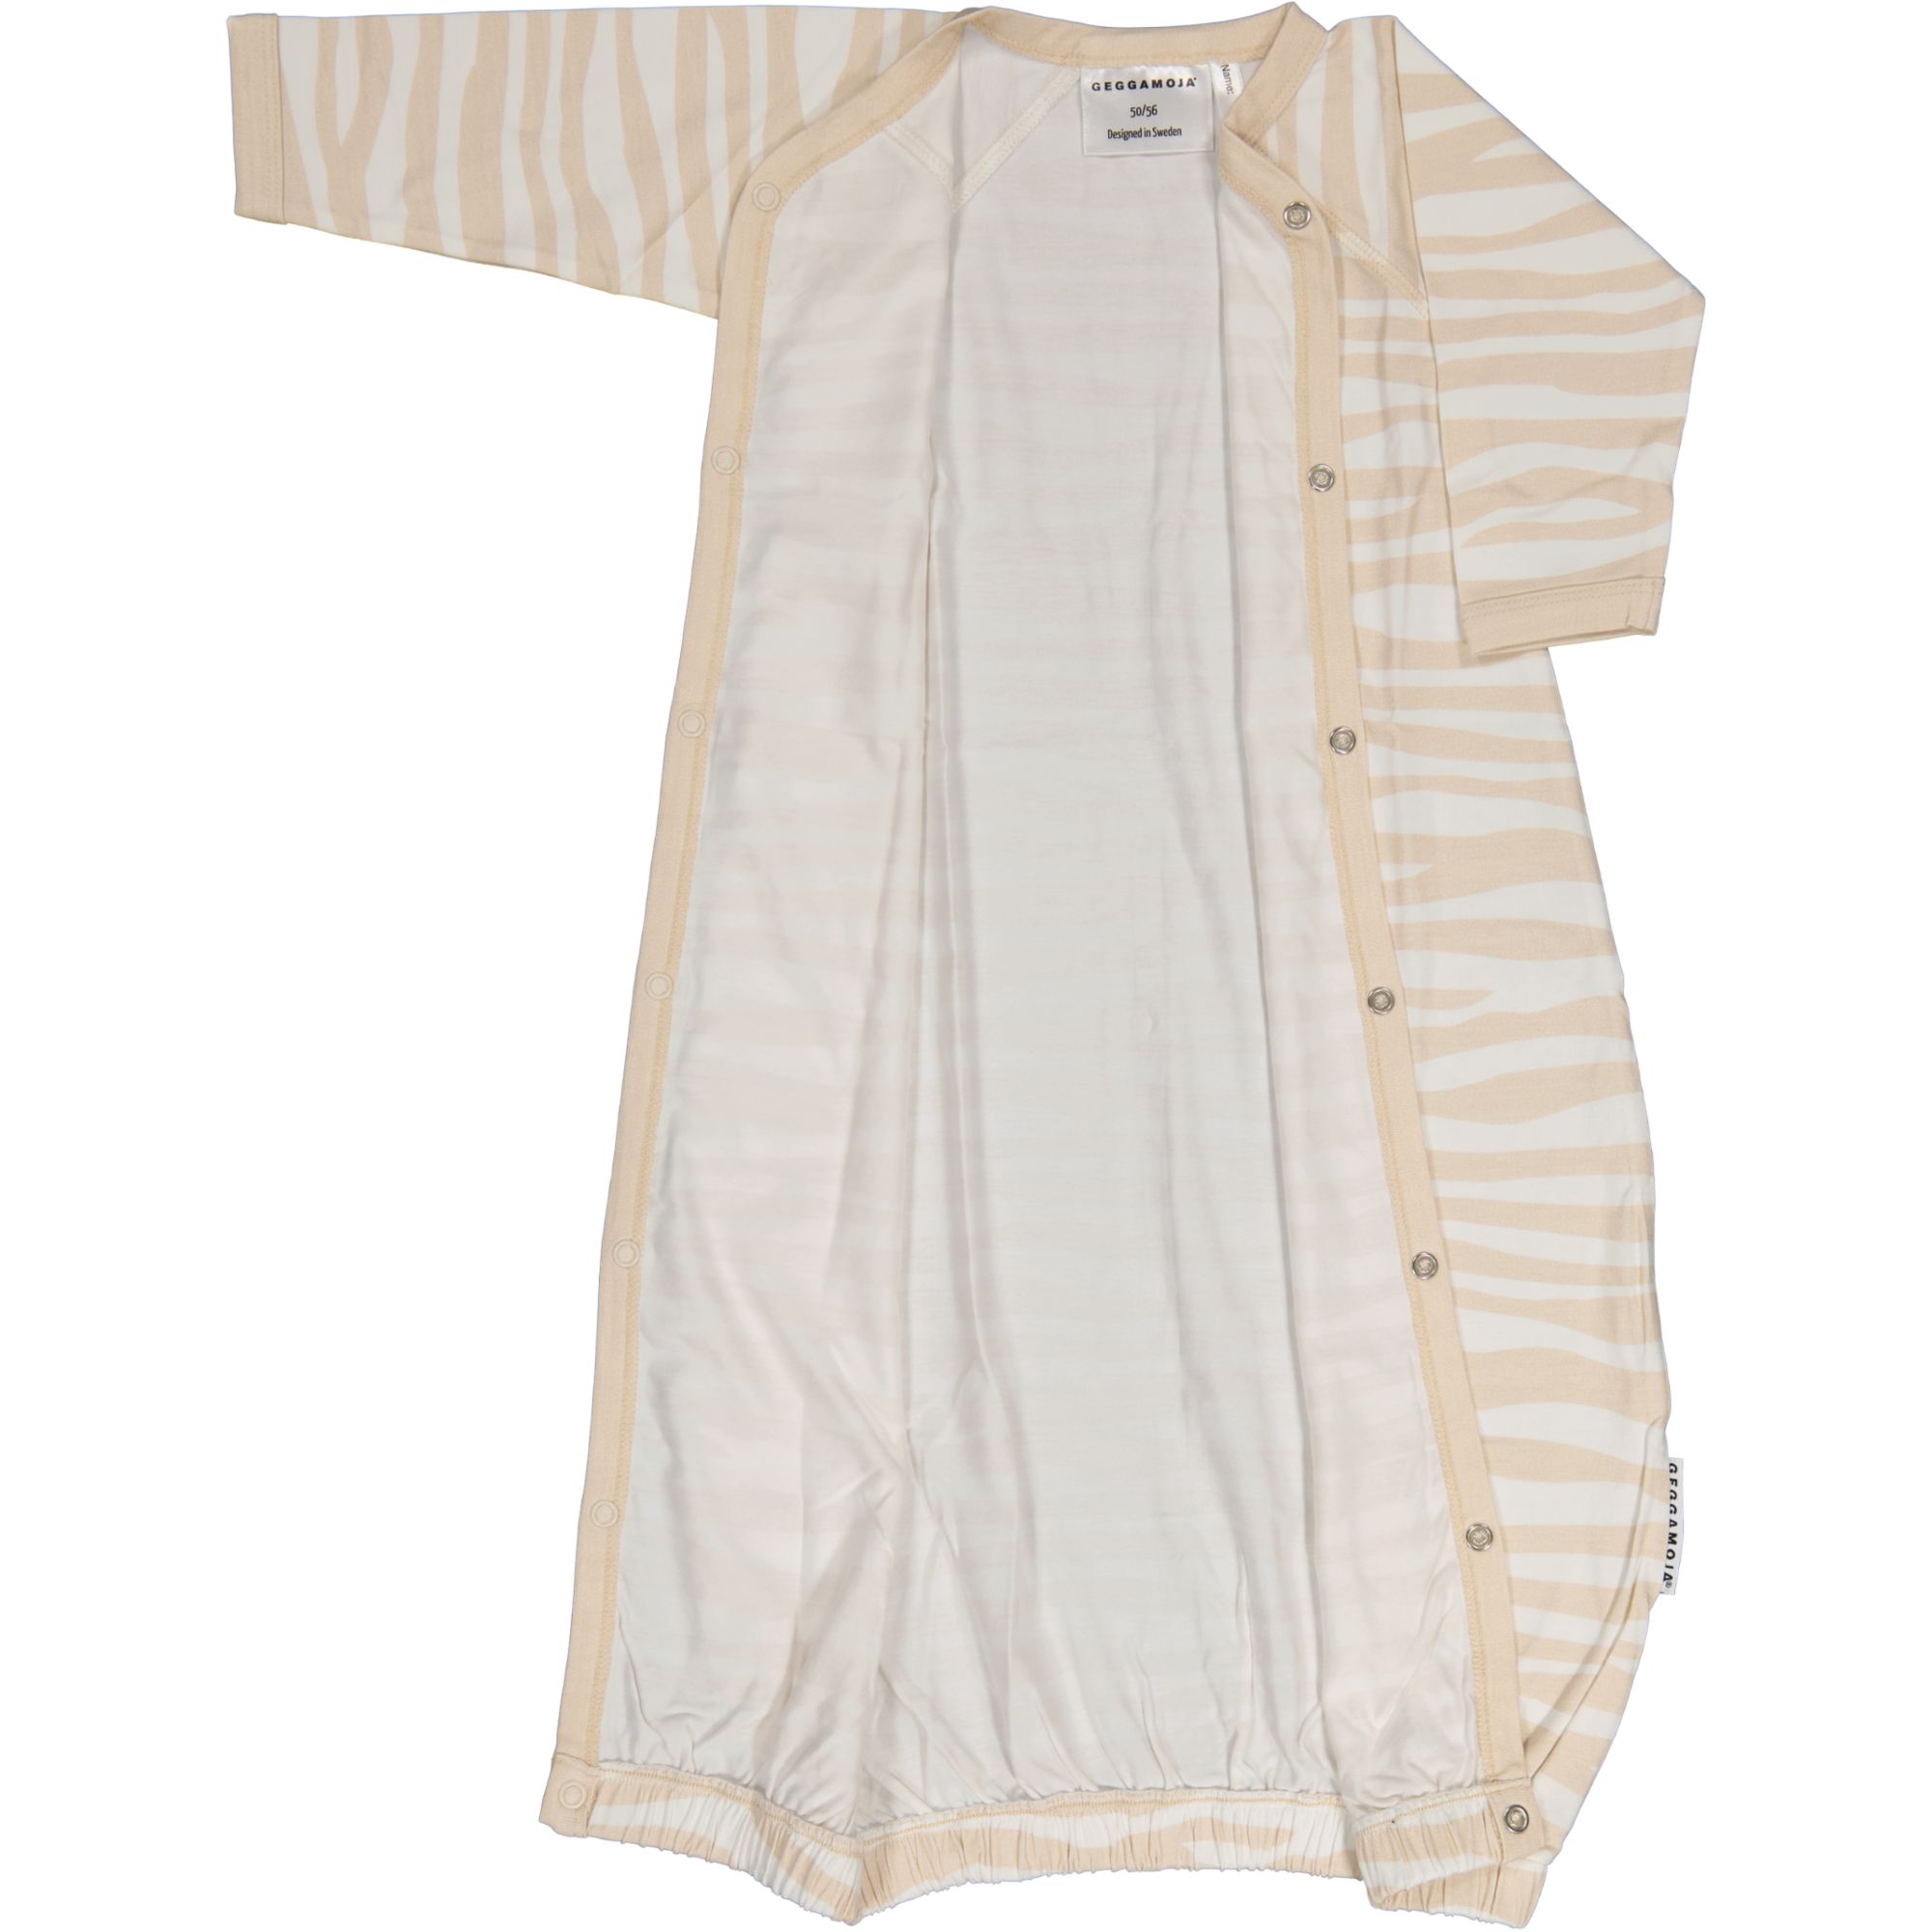 Bamboo sleep gown Soft beige zebra